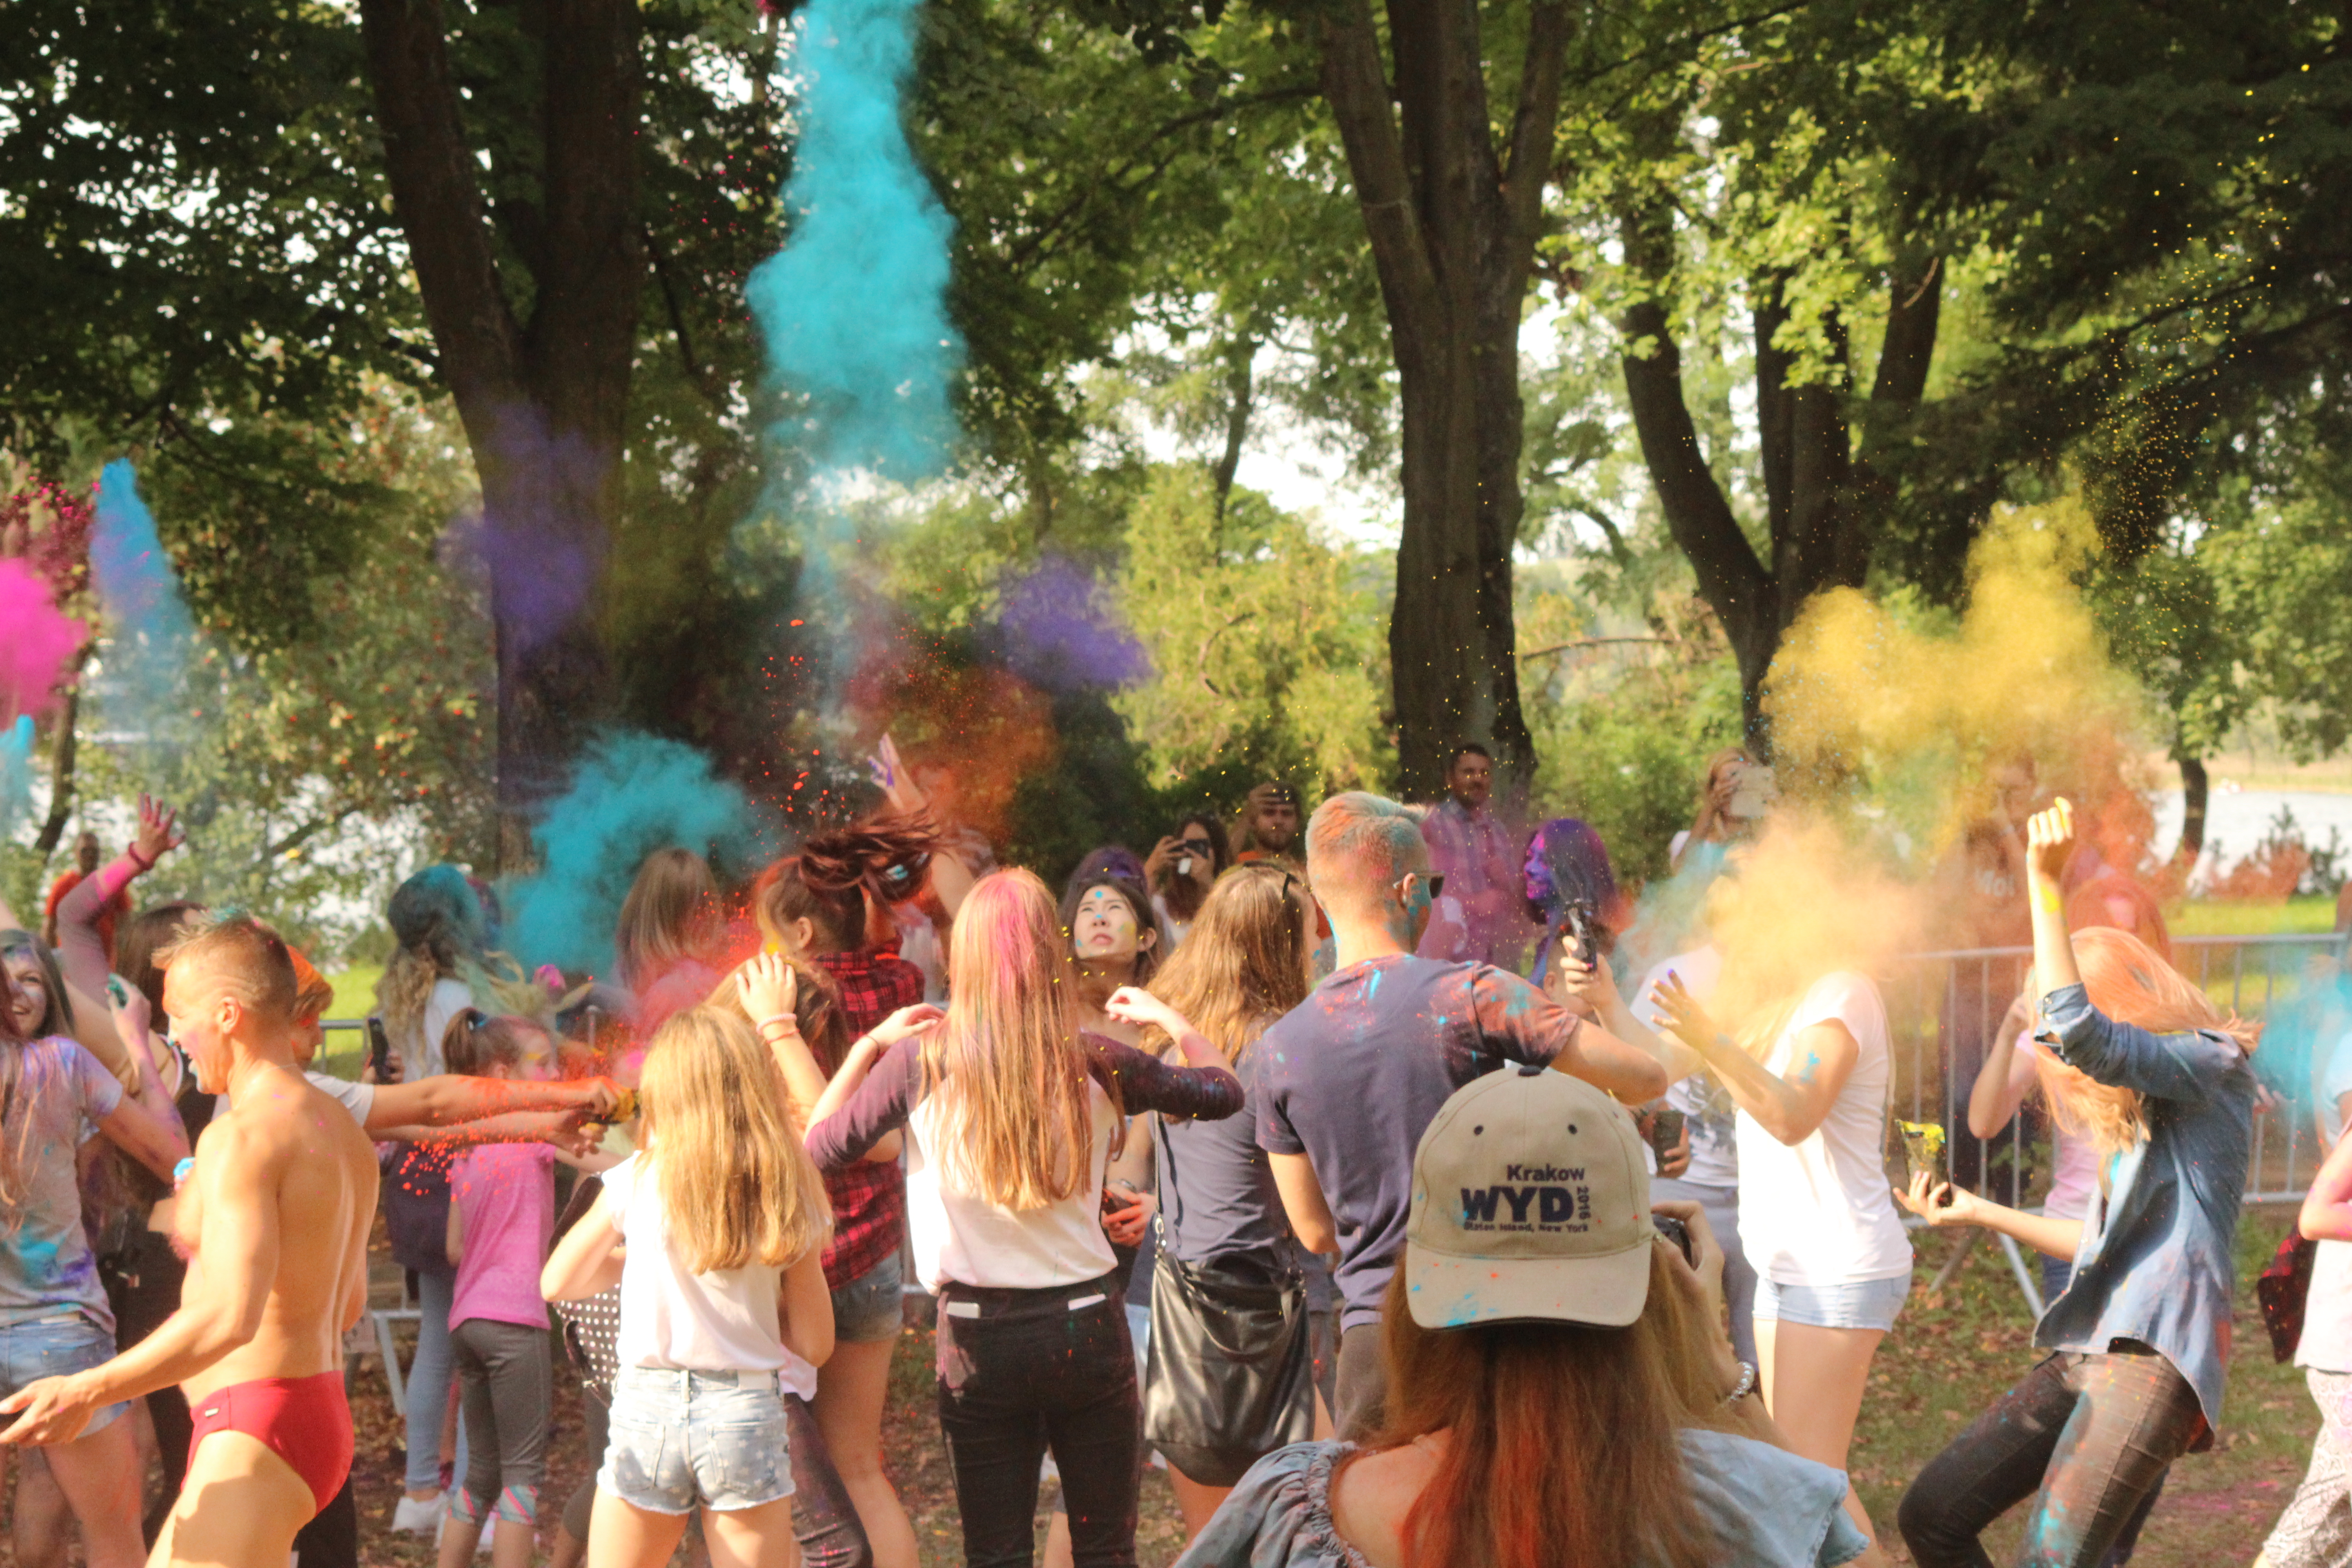 Festiwal Holi w Olsztynie. Zobacz barwne zdjęcia!